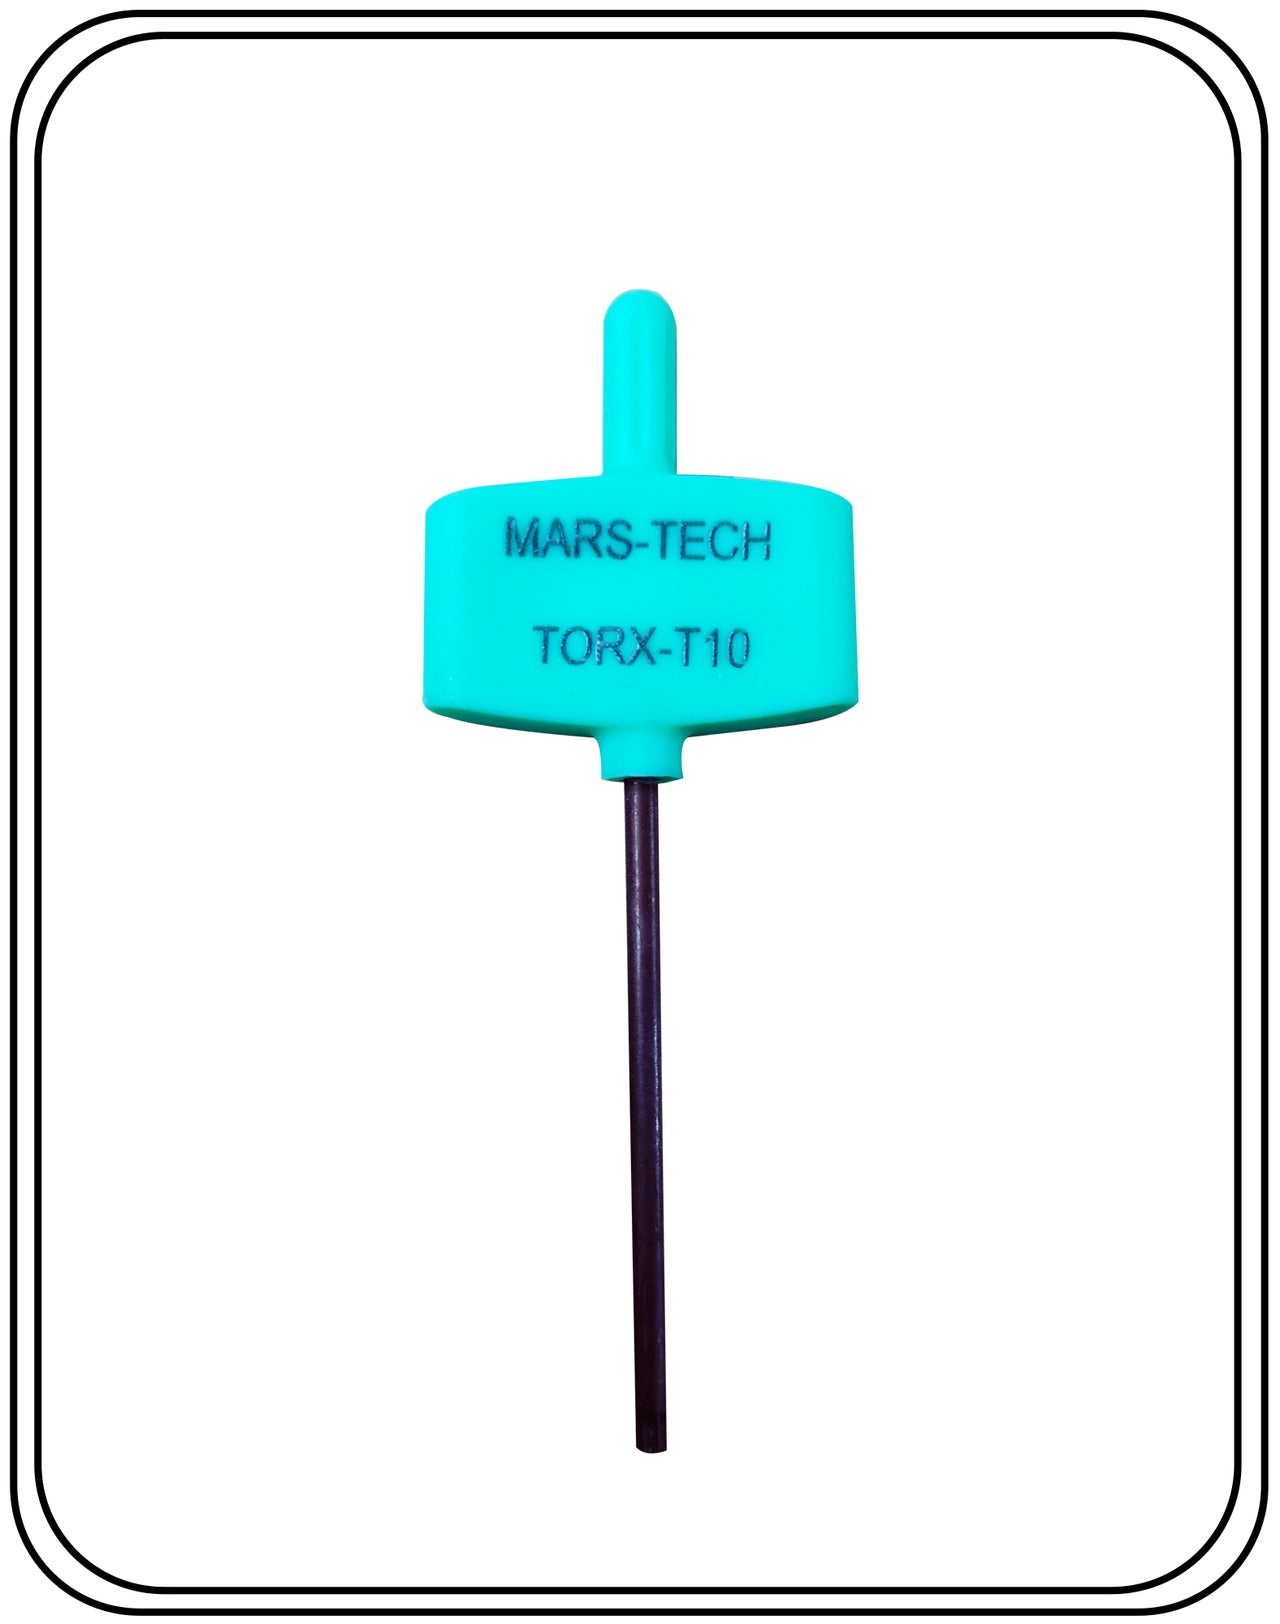 Mars-Tech Torx Key T10 high quality pack of 10